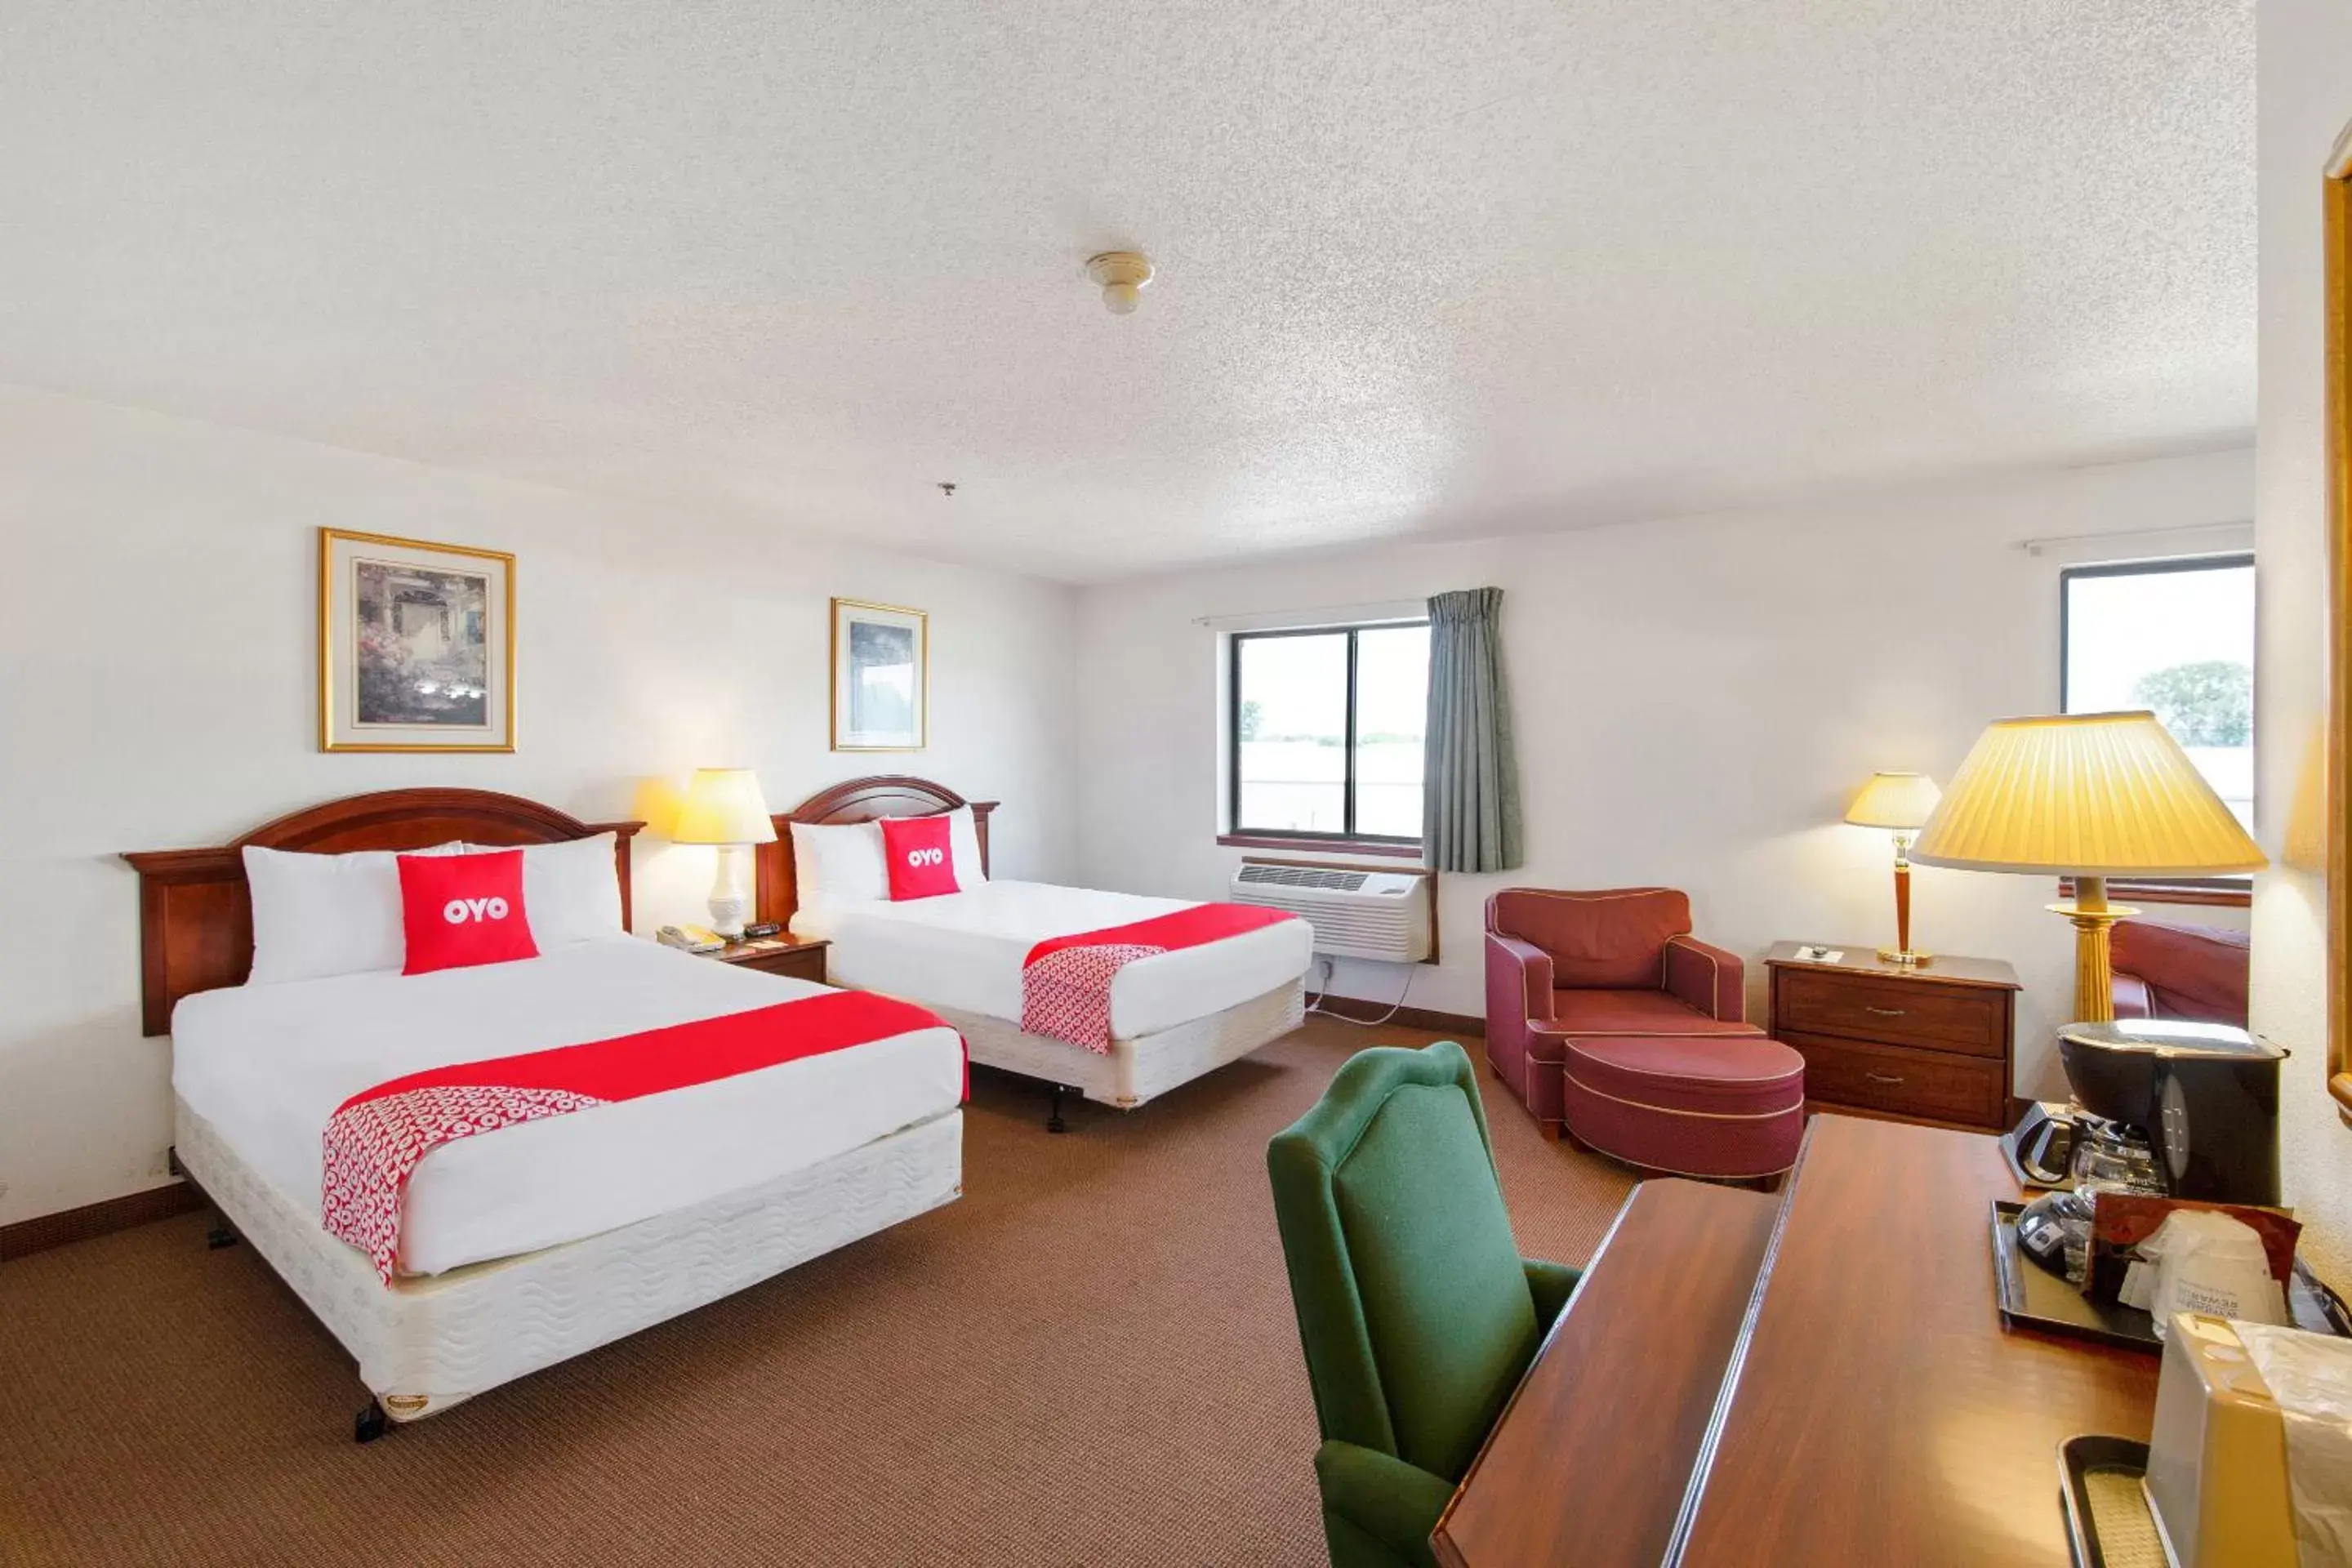 Bedroom in OYO Hotel Portage I-94